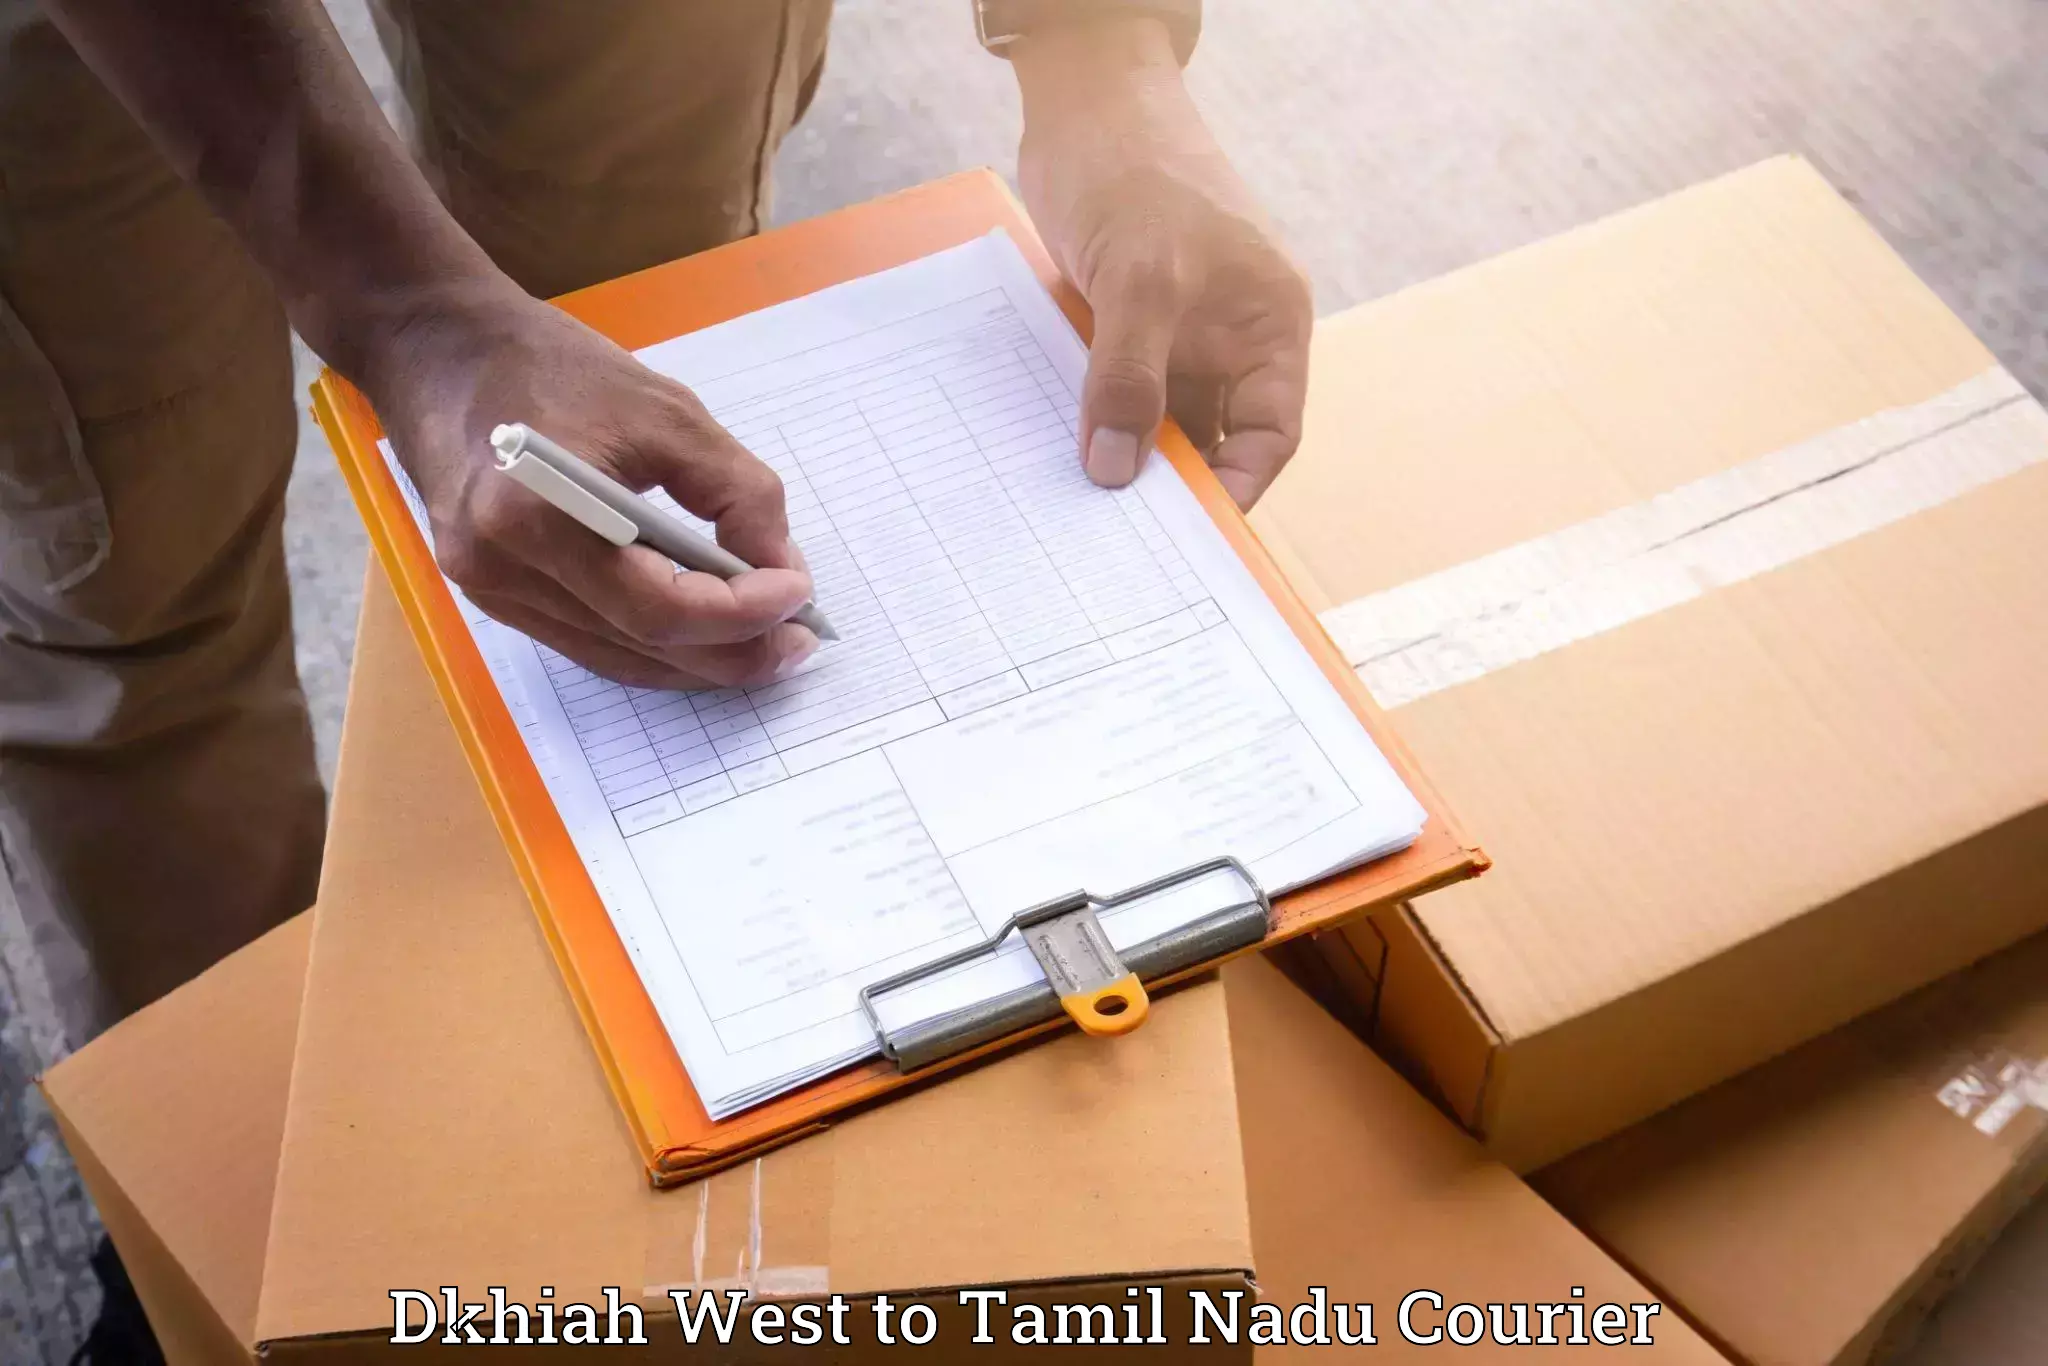 Efficient relocation services Dkhiah West to Tamil Nadu